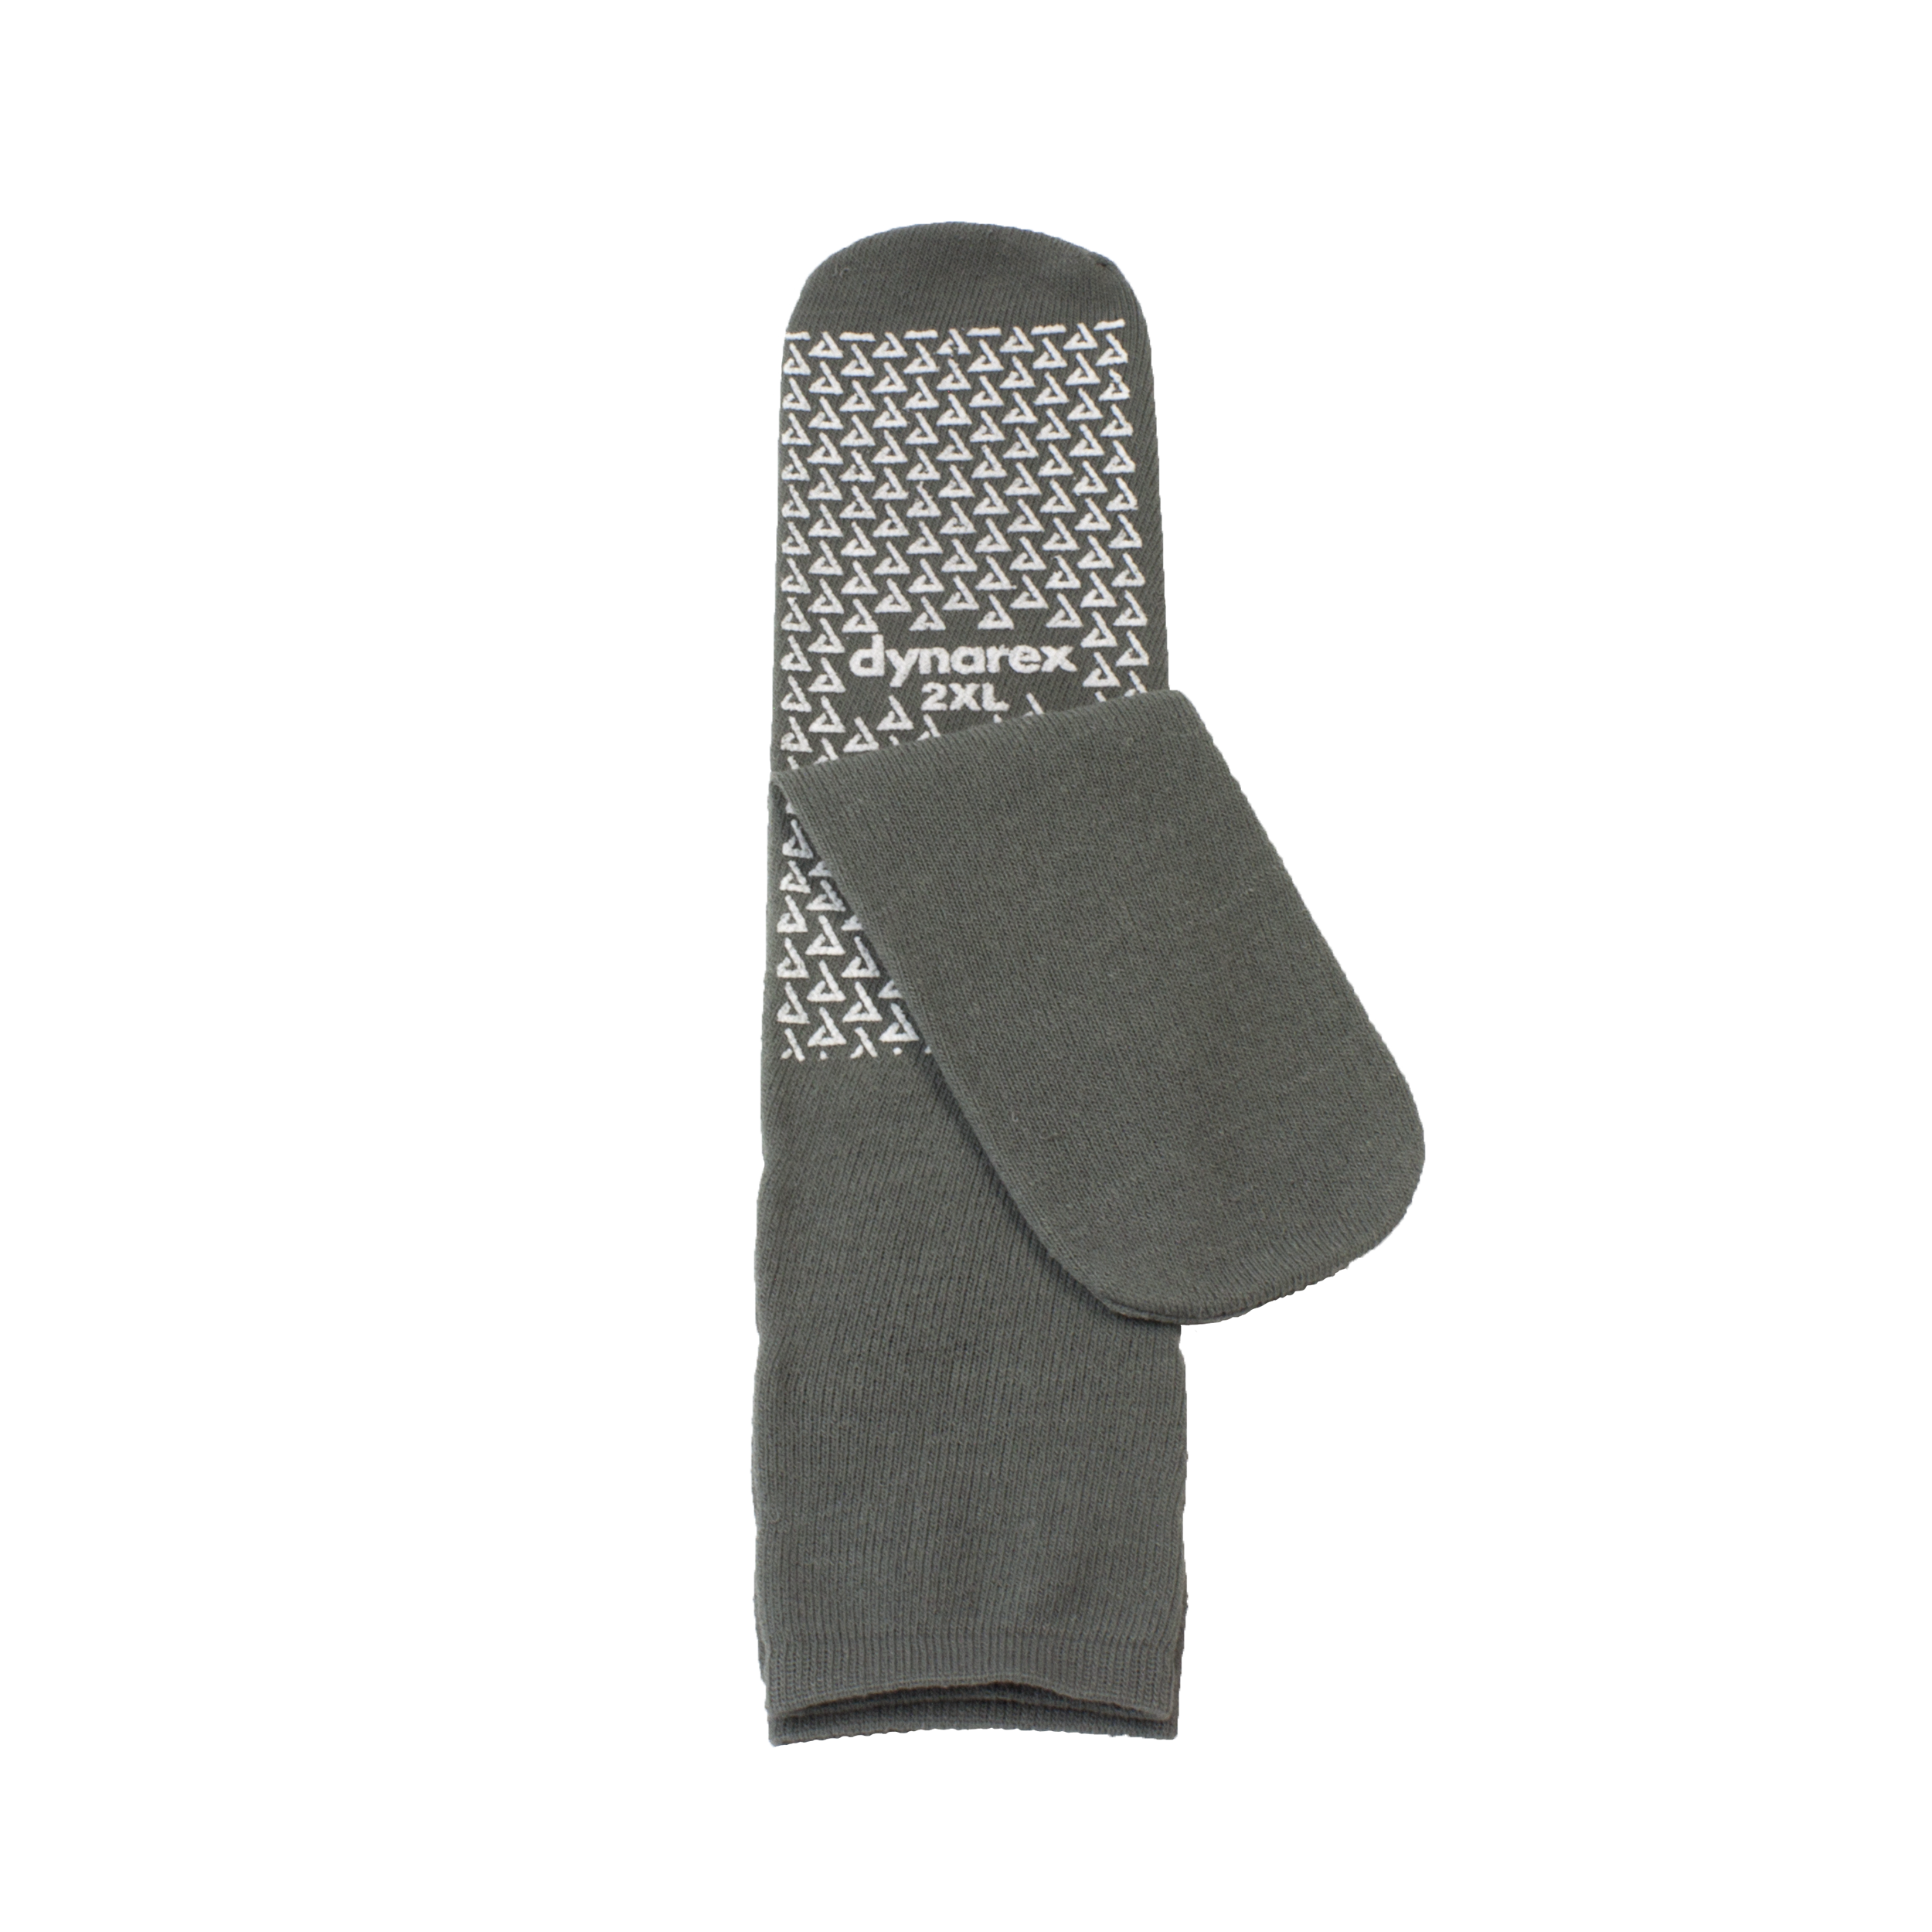 Single-Sided Slipper Socks - 2XL, Grey